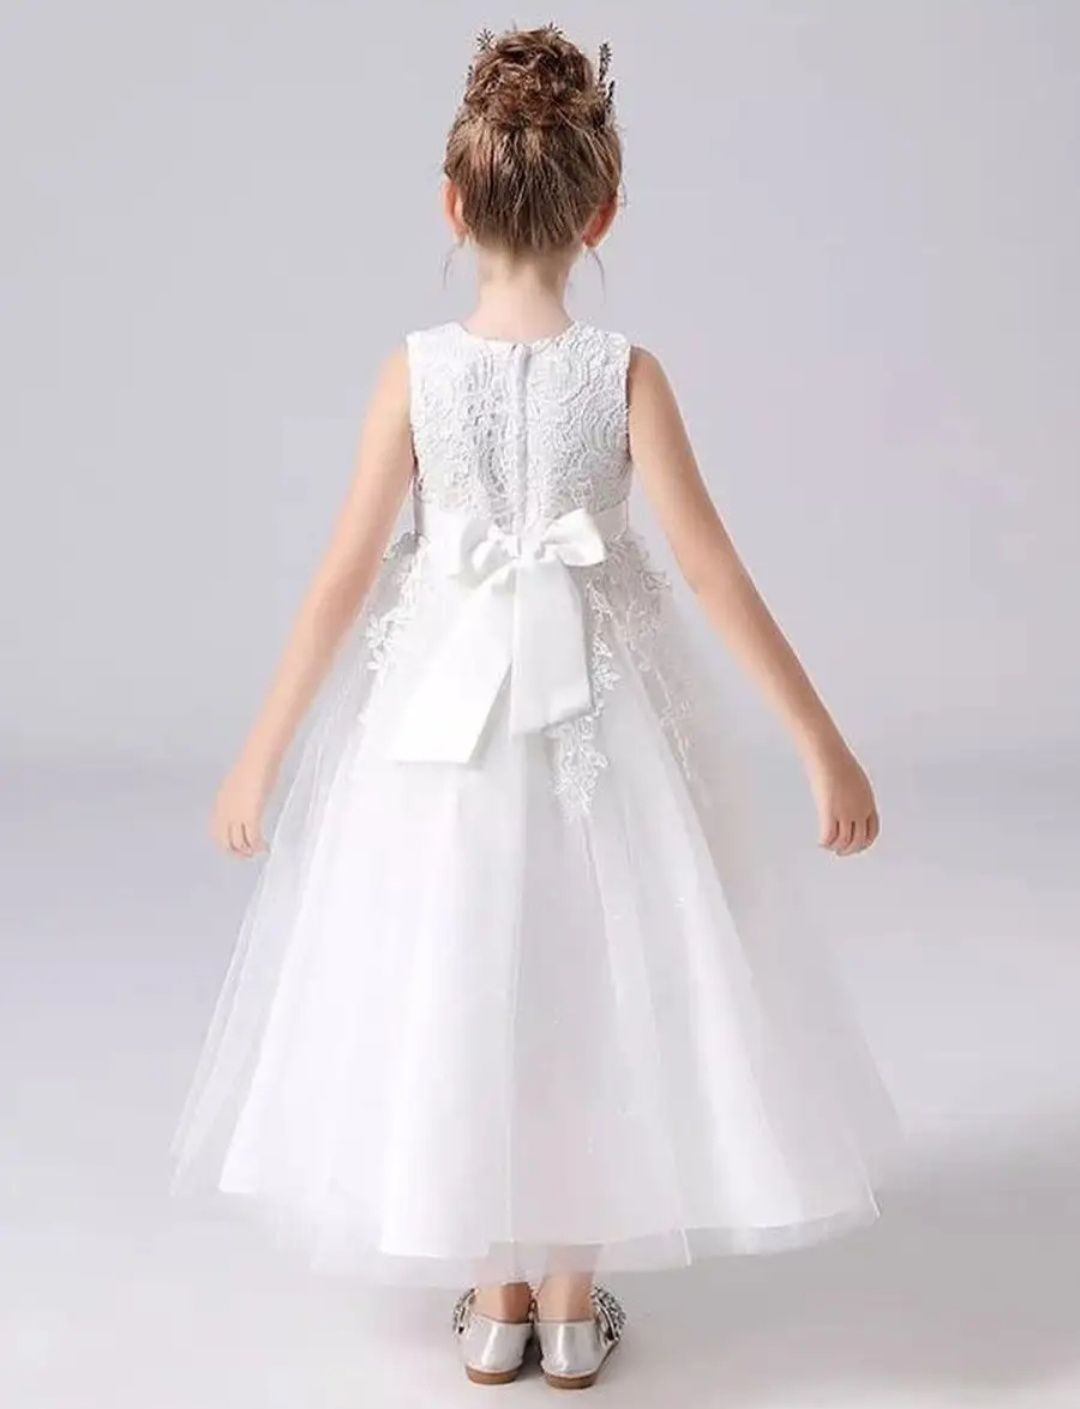 Белоснежный платье девочке